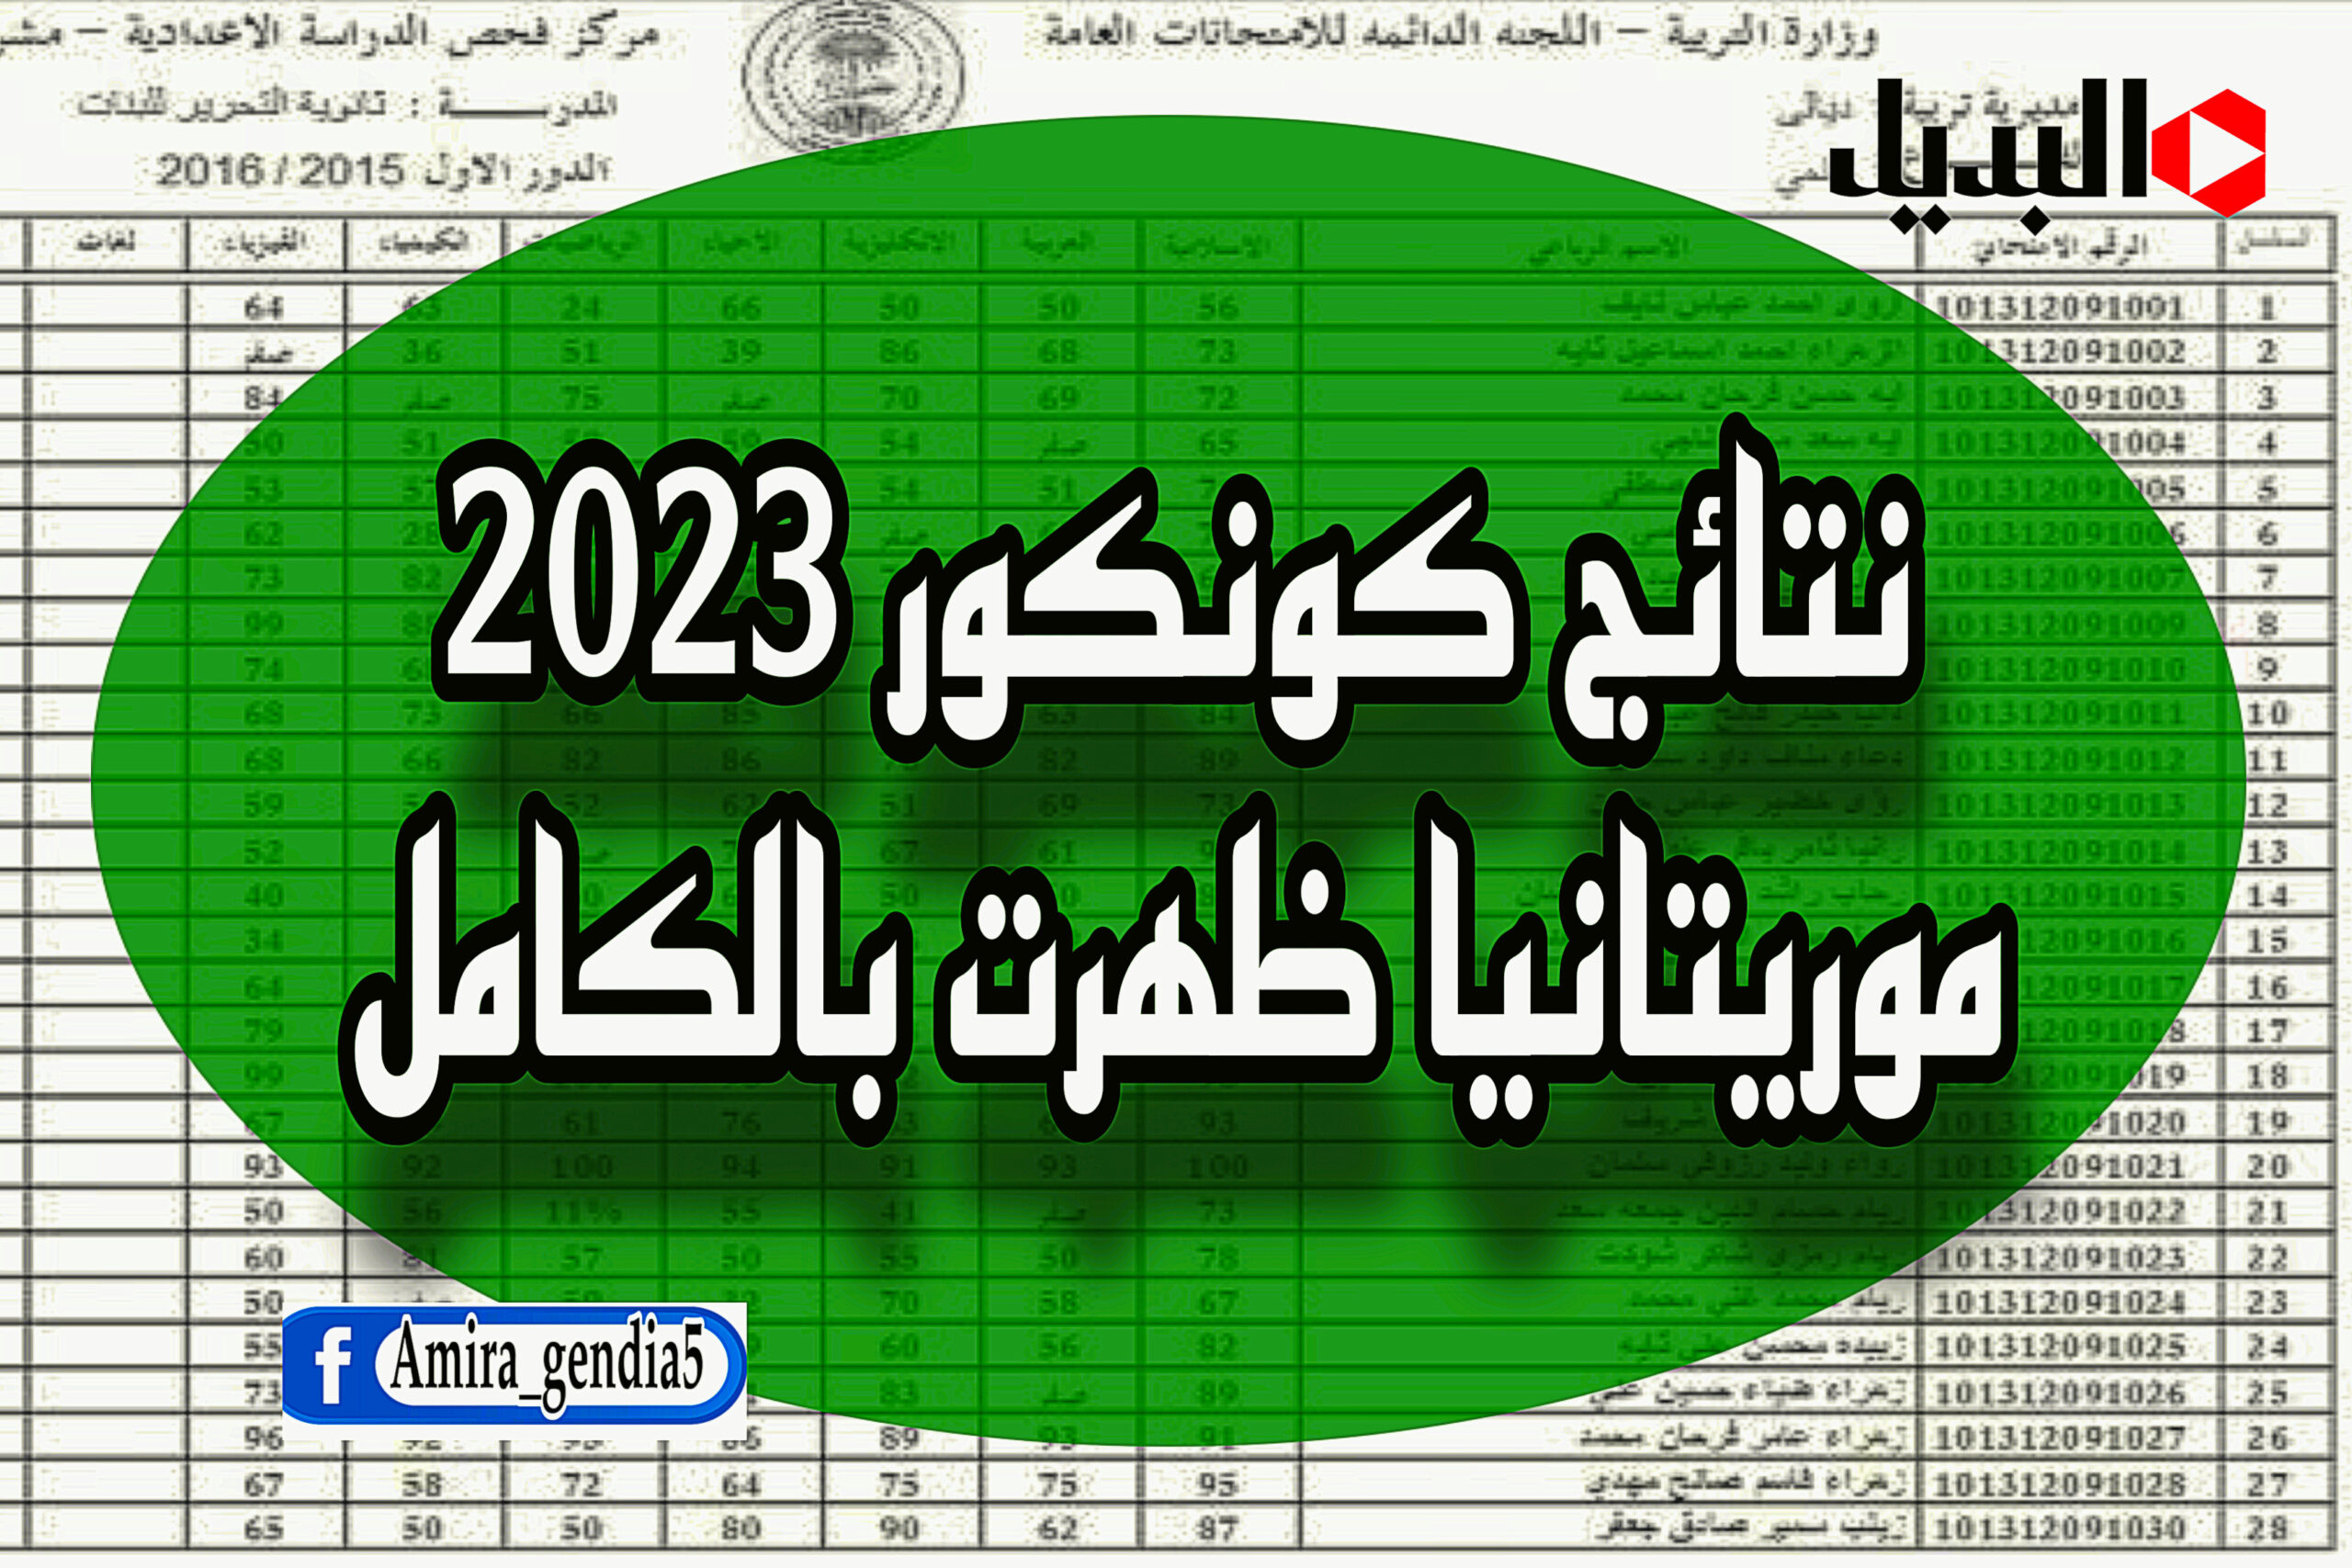 نتائج كونكور 2023 موريتانيا